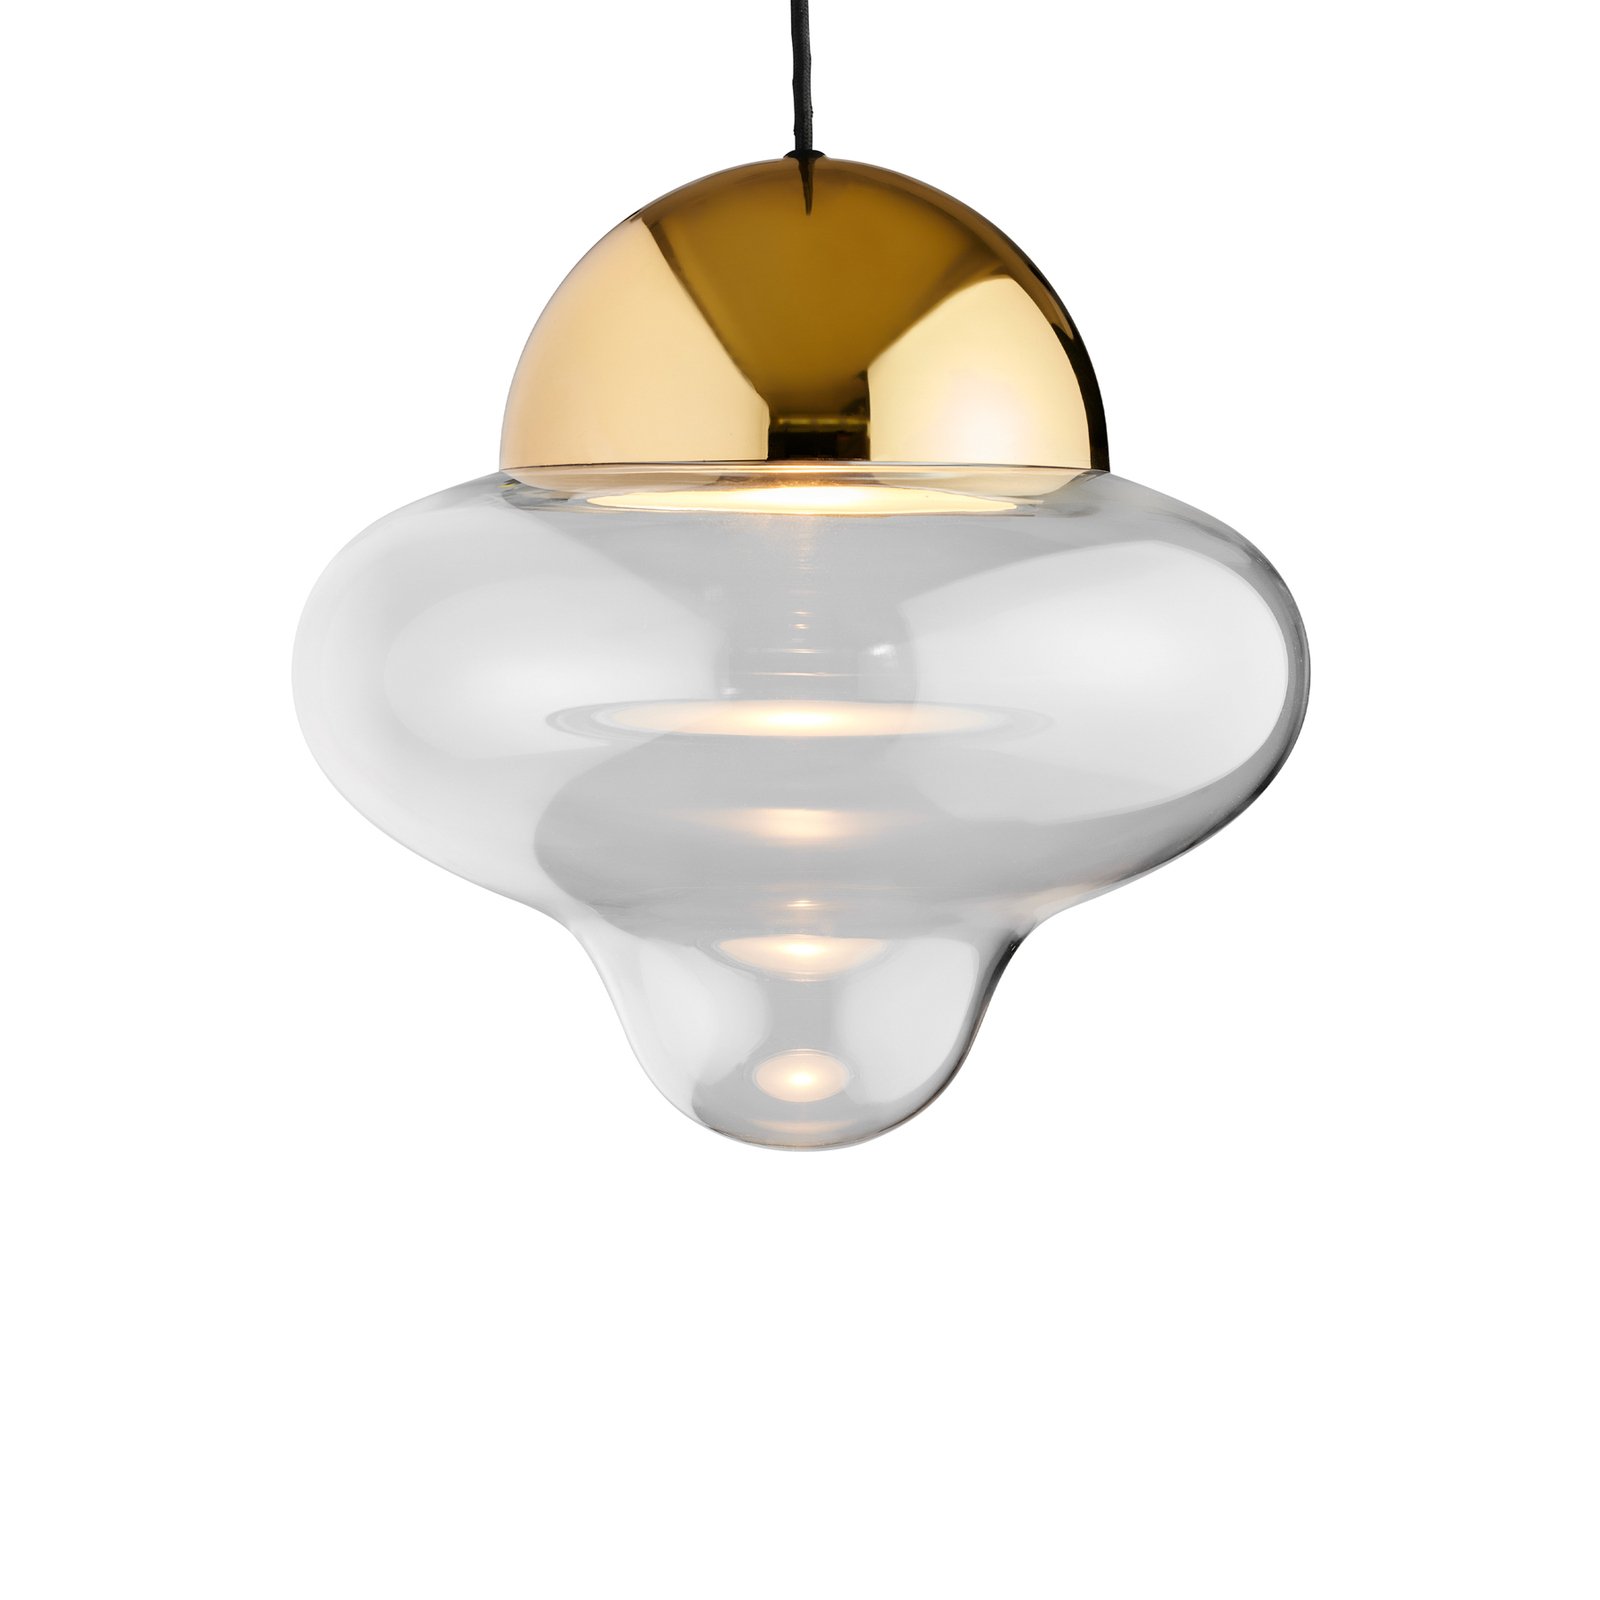 LED-Hängeleuchte Nutty XL, klar / goldfarben, Ø 30 cm, Glas